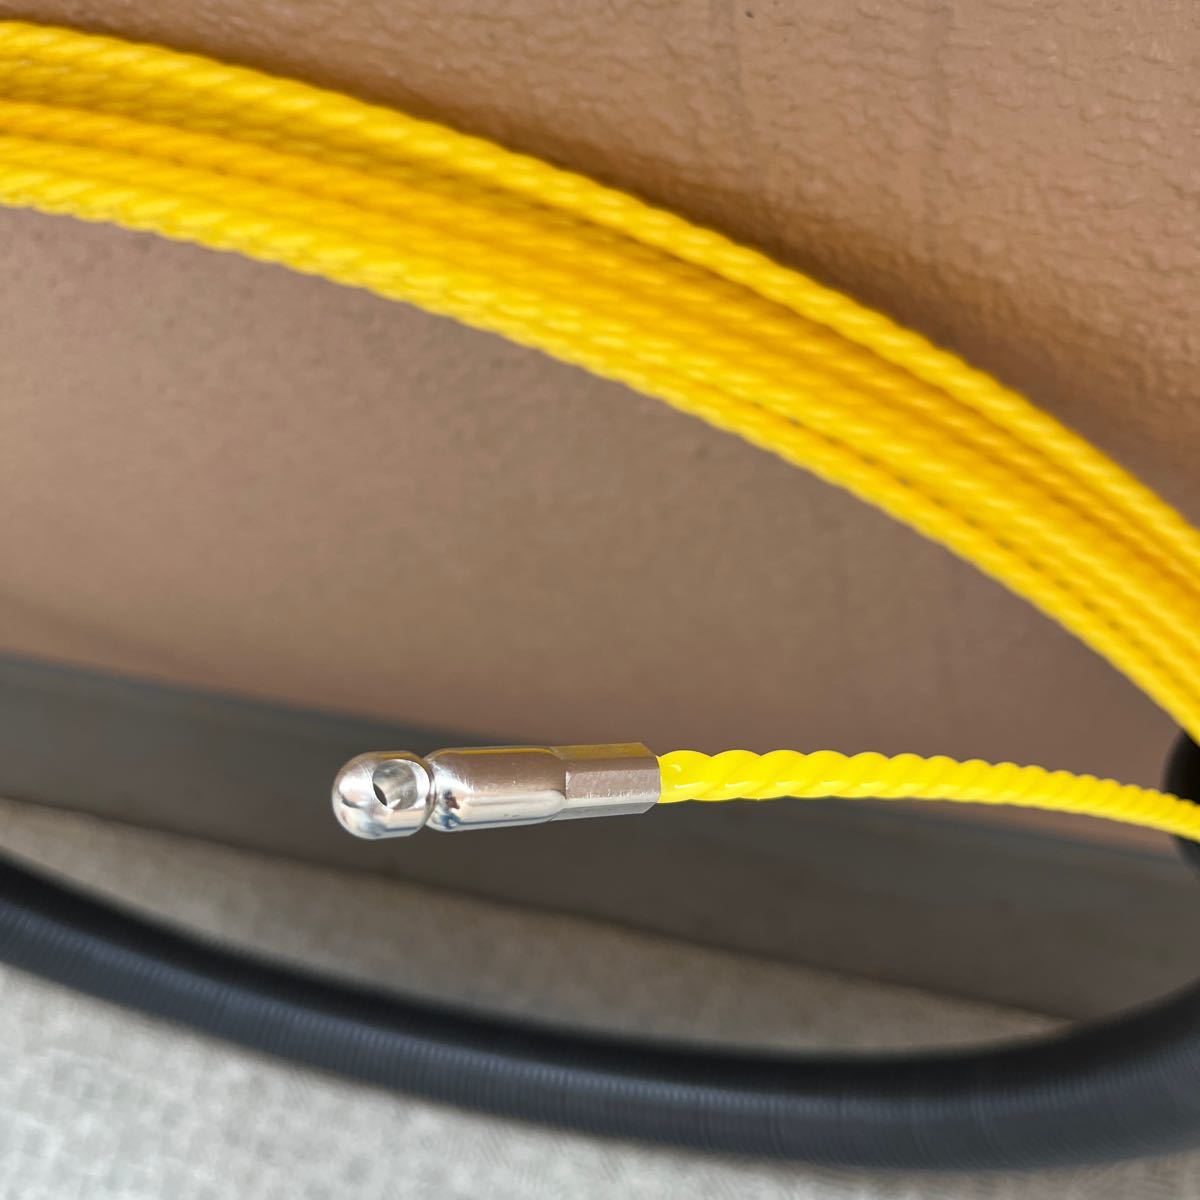 通しワイヤー 通線ワイヤー 通線工具 電線通し ロープ通し 紐通し 入線 呼線 ホース通し 配管通し 線径3.7mm 結束ワイヤー 付属 30ｍ 送料無料